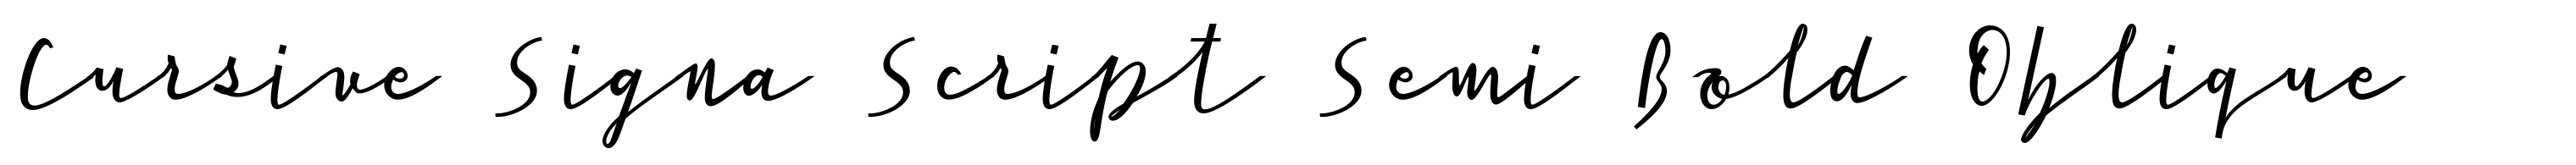 Cursive Signa Script Semi Bold Oblique